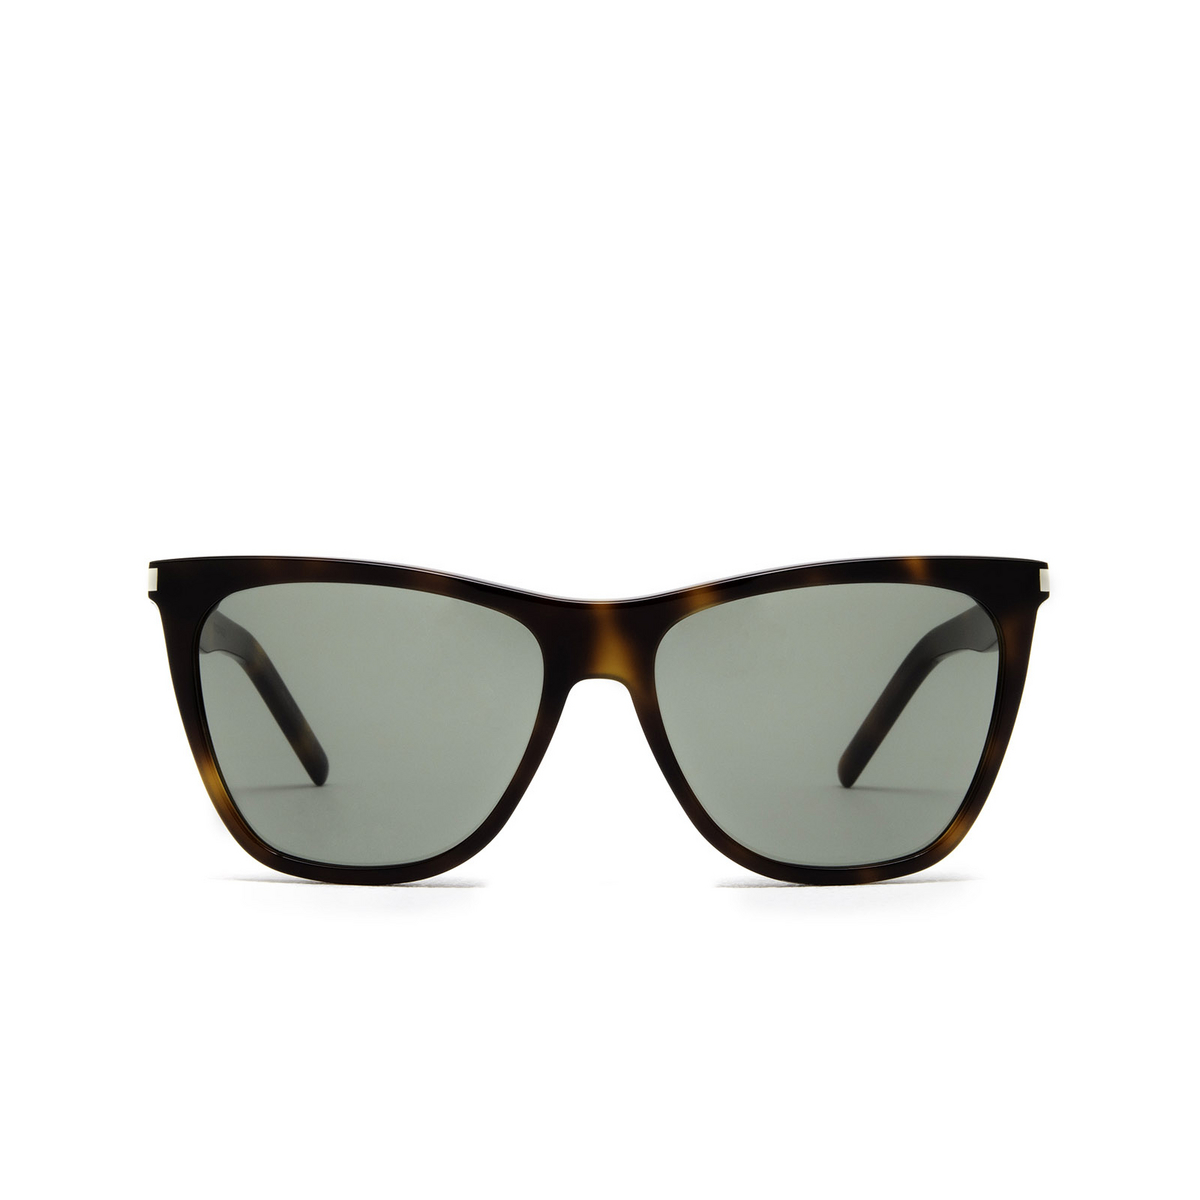 Saint Laurent® Cat-eye Sunglasses: SL 526 color Havana 002 - front view.